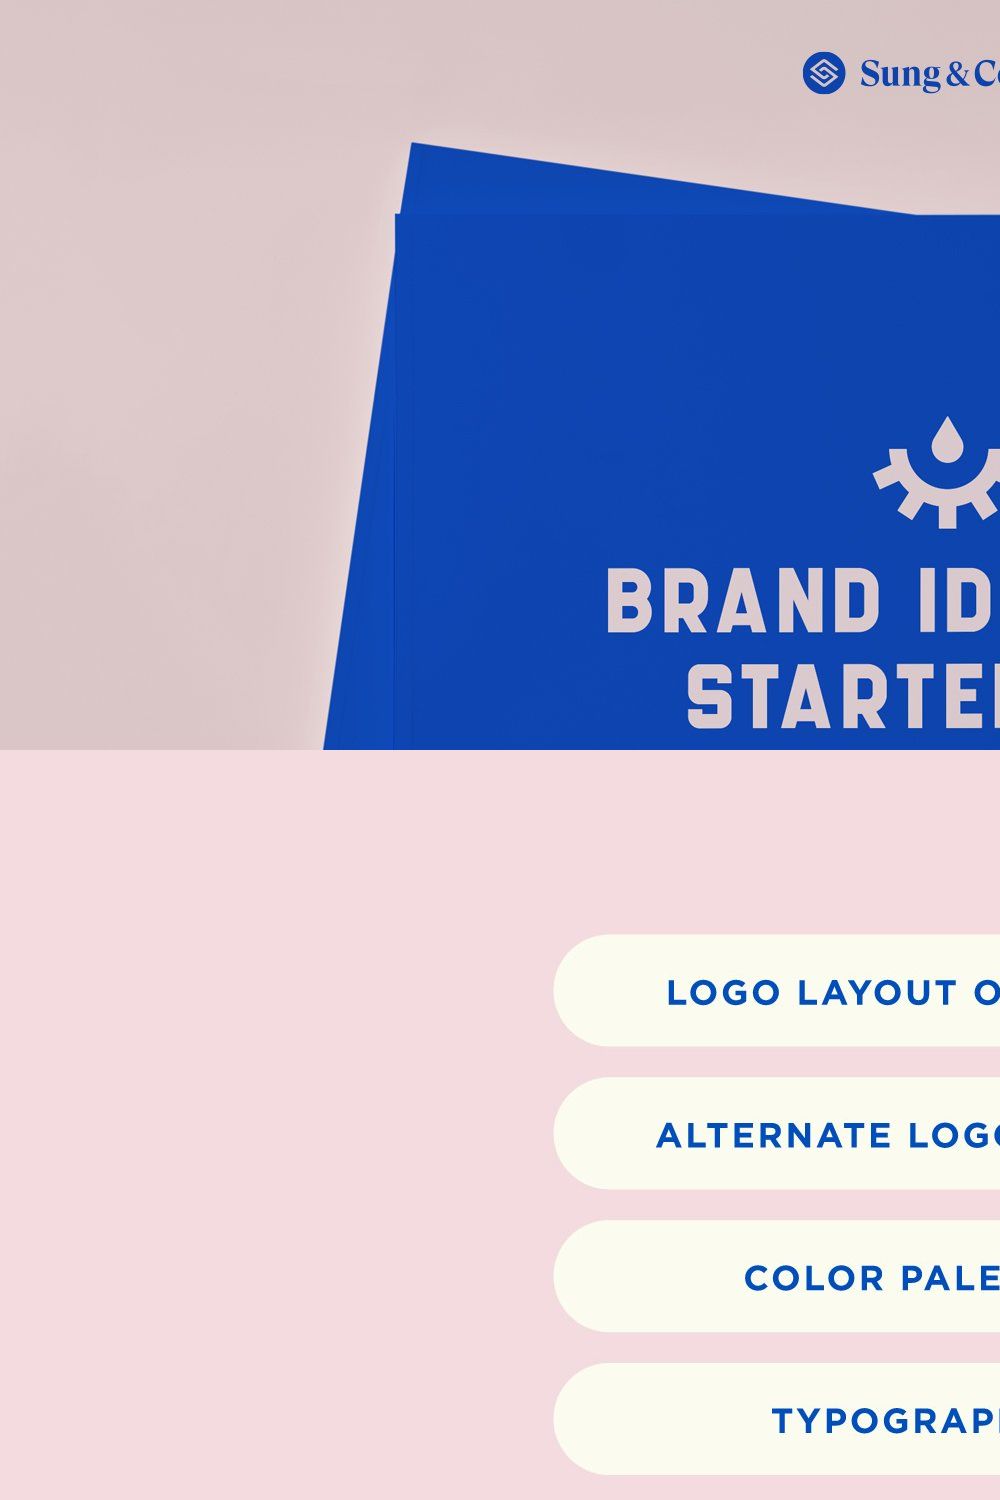 Brand Identity Starter Kit pinterest preview image.